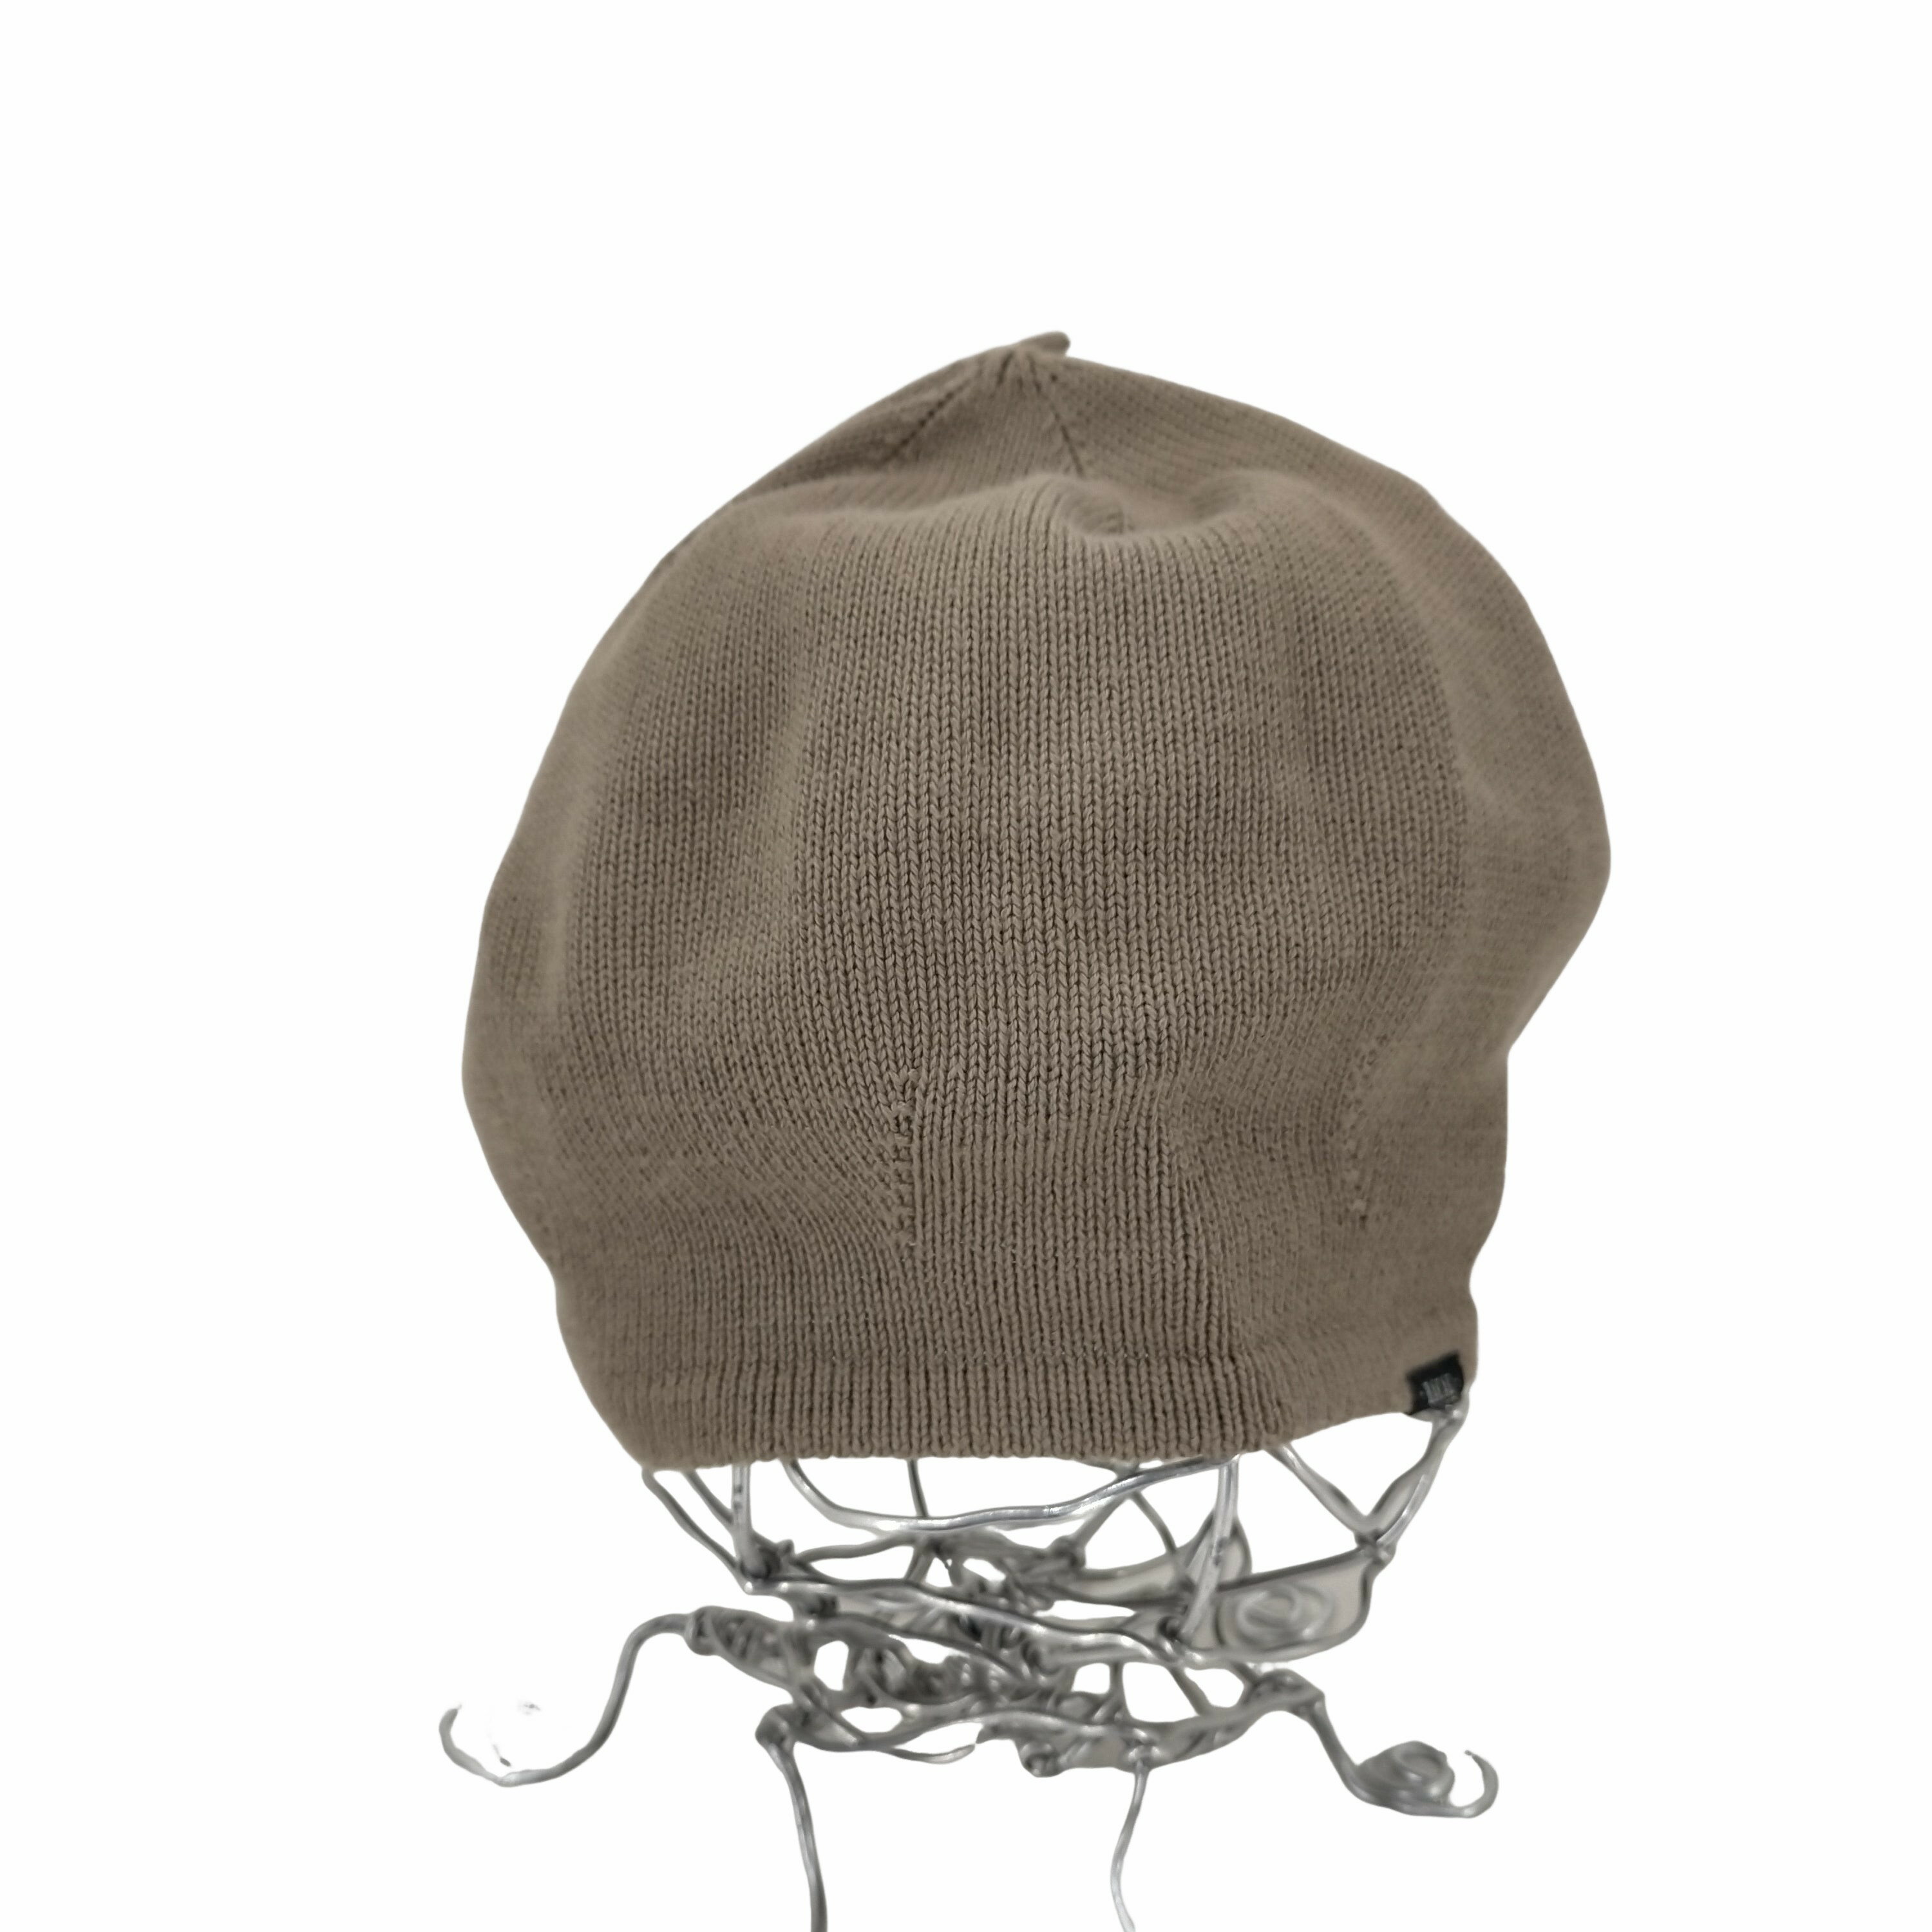 ブランド RACAL(ラカル) カテゴリ メンズ 帽子 ベレー アイテム サマーニットベレー帽 表記サイズ 表記無 参考サイズ 表記無 実寸 頭囲40cm 高さ20cm 素材 製品表示なし 色 茶系 柄無地 状態 (B)程度良好・使用感あり 型番RL-17-873 更新日 2024/01/27 17:05 こちらの商品は下北沢南口店にてご試着可能です。完売・移動している場合がございますのでご来店前に(03-6453-2455)ご連絡頂き、(1130497596904)をお伝えください。 BAZZSTORE(バズストア)について下北沢、渋谷、原宿、高円寺など東京の古着のメッカに多数の店舗を展開するブランド古着の買取販売の専門店です。美品、新品に近い良質な中古から、玄人好みのヴィンテージ(ビンテージ)古着アイテムを多数取り扱っております。アウトレット品ではなく、店頭買取を中心とした中古1点のみの在庫処分価格で掲載しております。主に20代、30代、40代、50代、60代と幅広い世代の方にご利用頂いております。【在庫について】実店舗と併売をしております。 店頭価格と通販価格が異なる商品が一部ございます。 他通販サイト・実店舗でも同時に販売しており、ご注文後に在庫を確認させて頂くため、在庫がない場合はキャンセル対応させて頂く場合がございます。